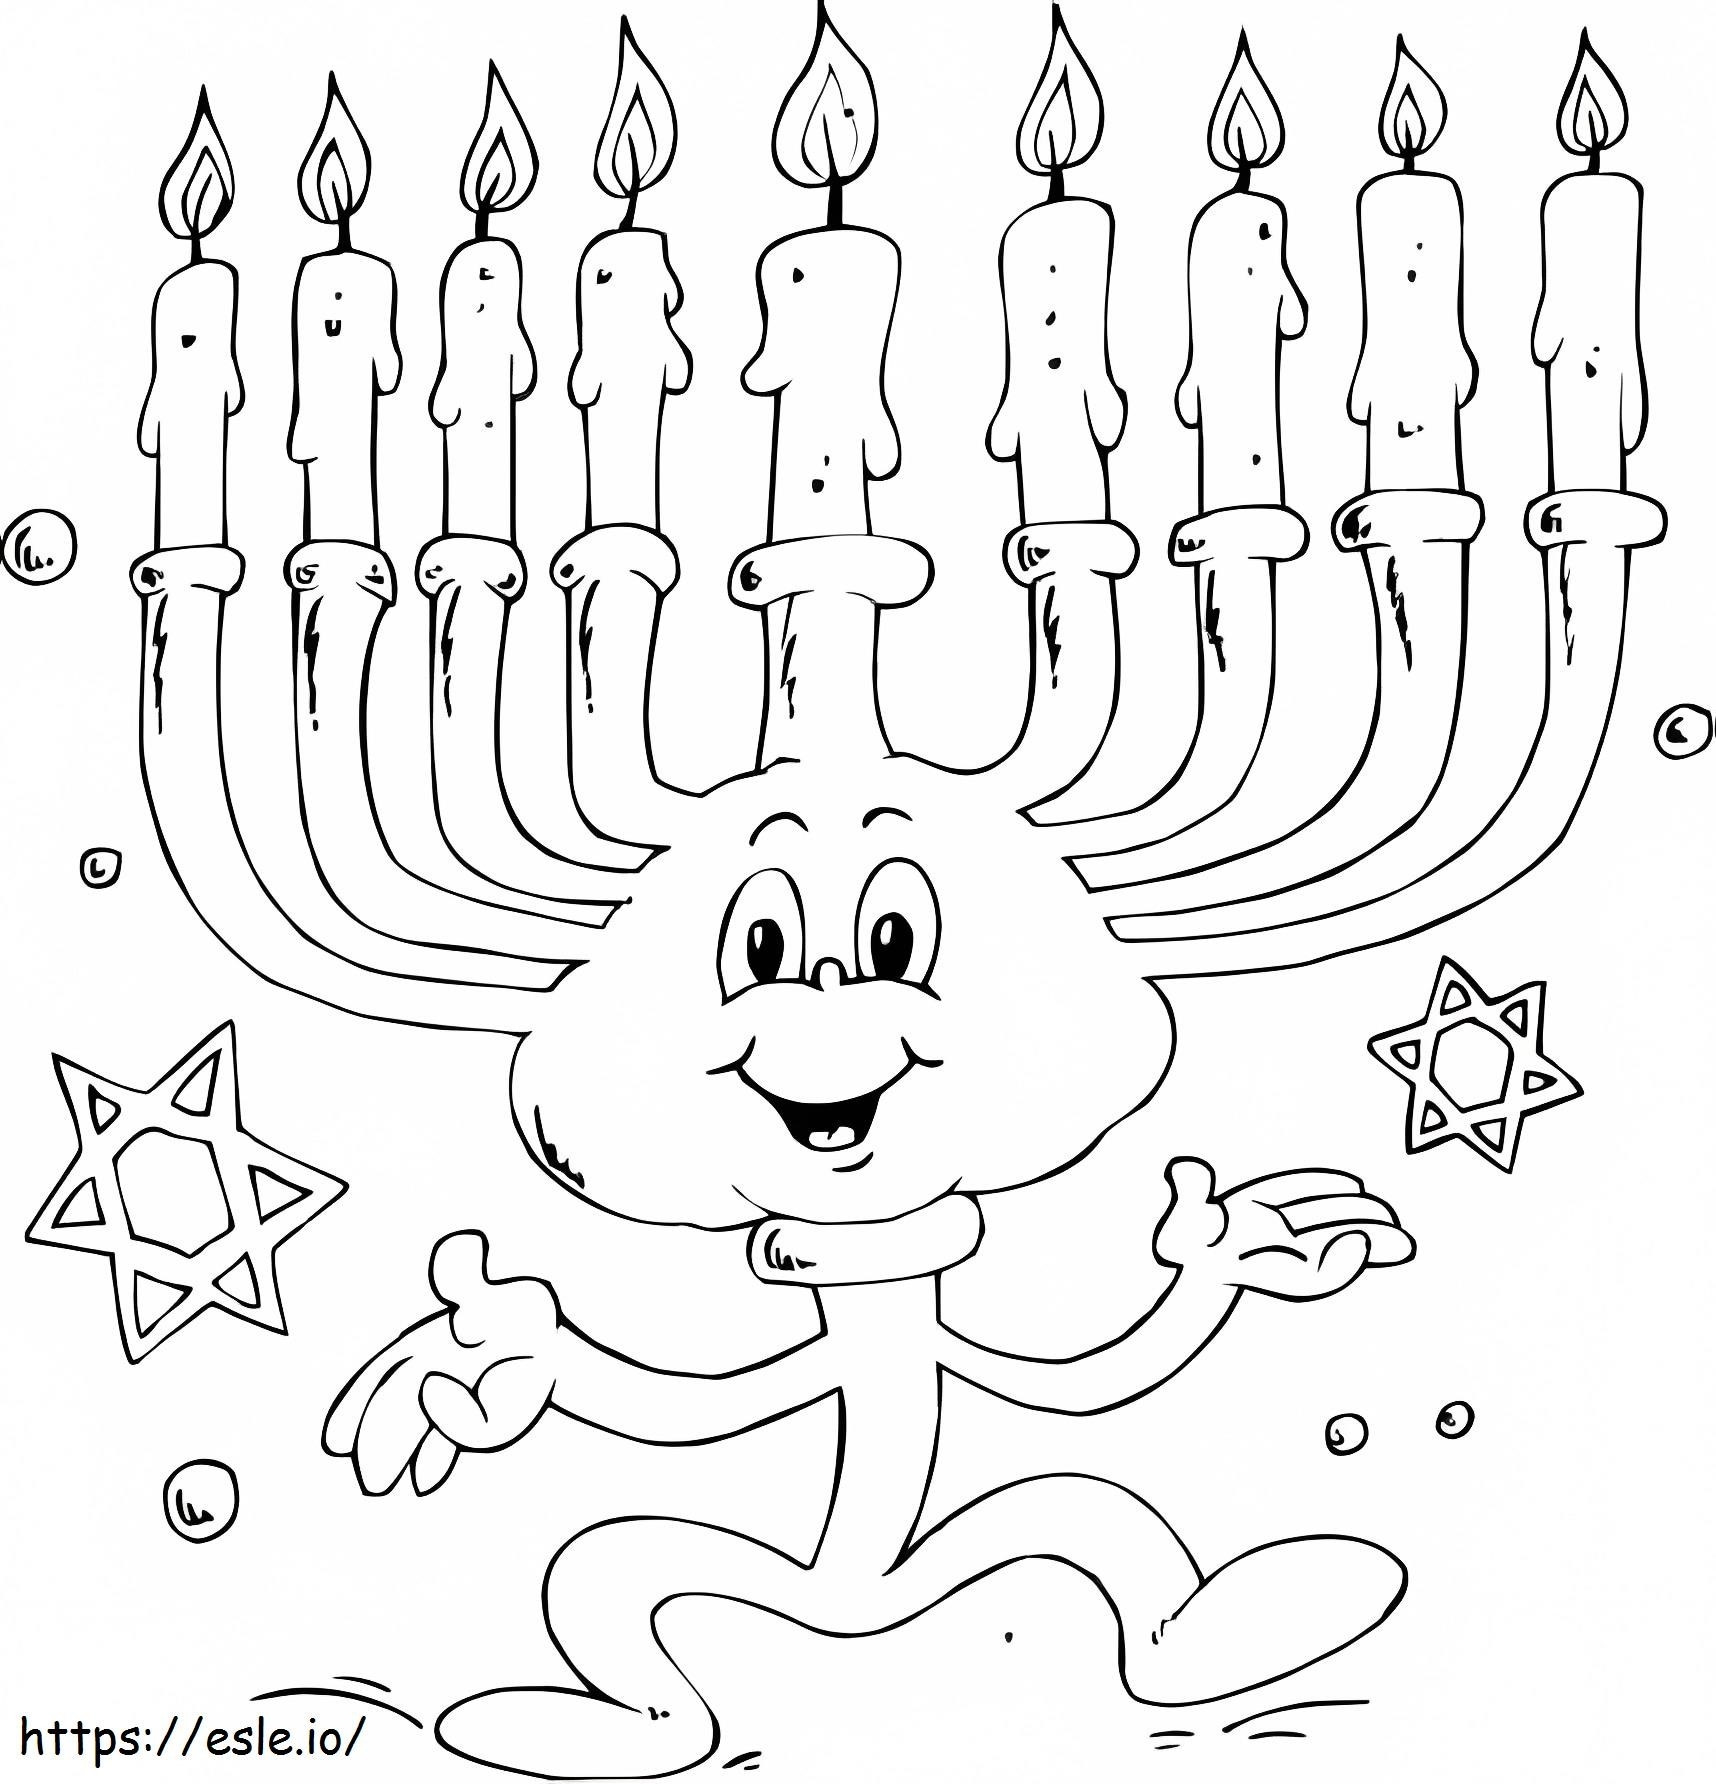 Cartoon Hanukkah Menorah coloring page